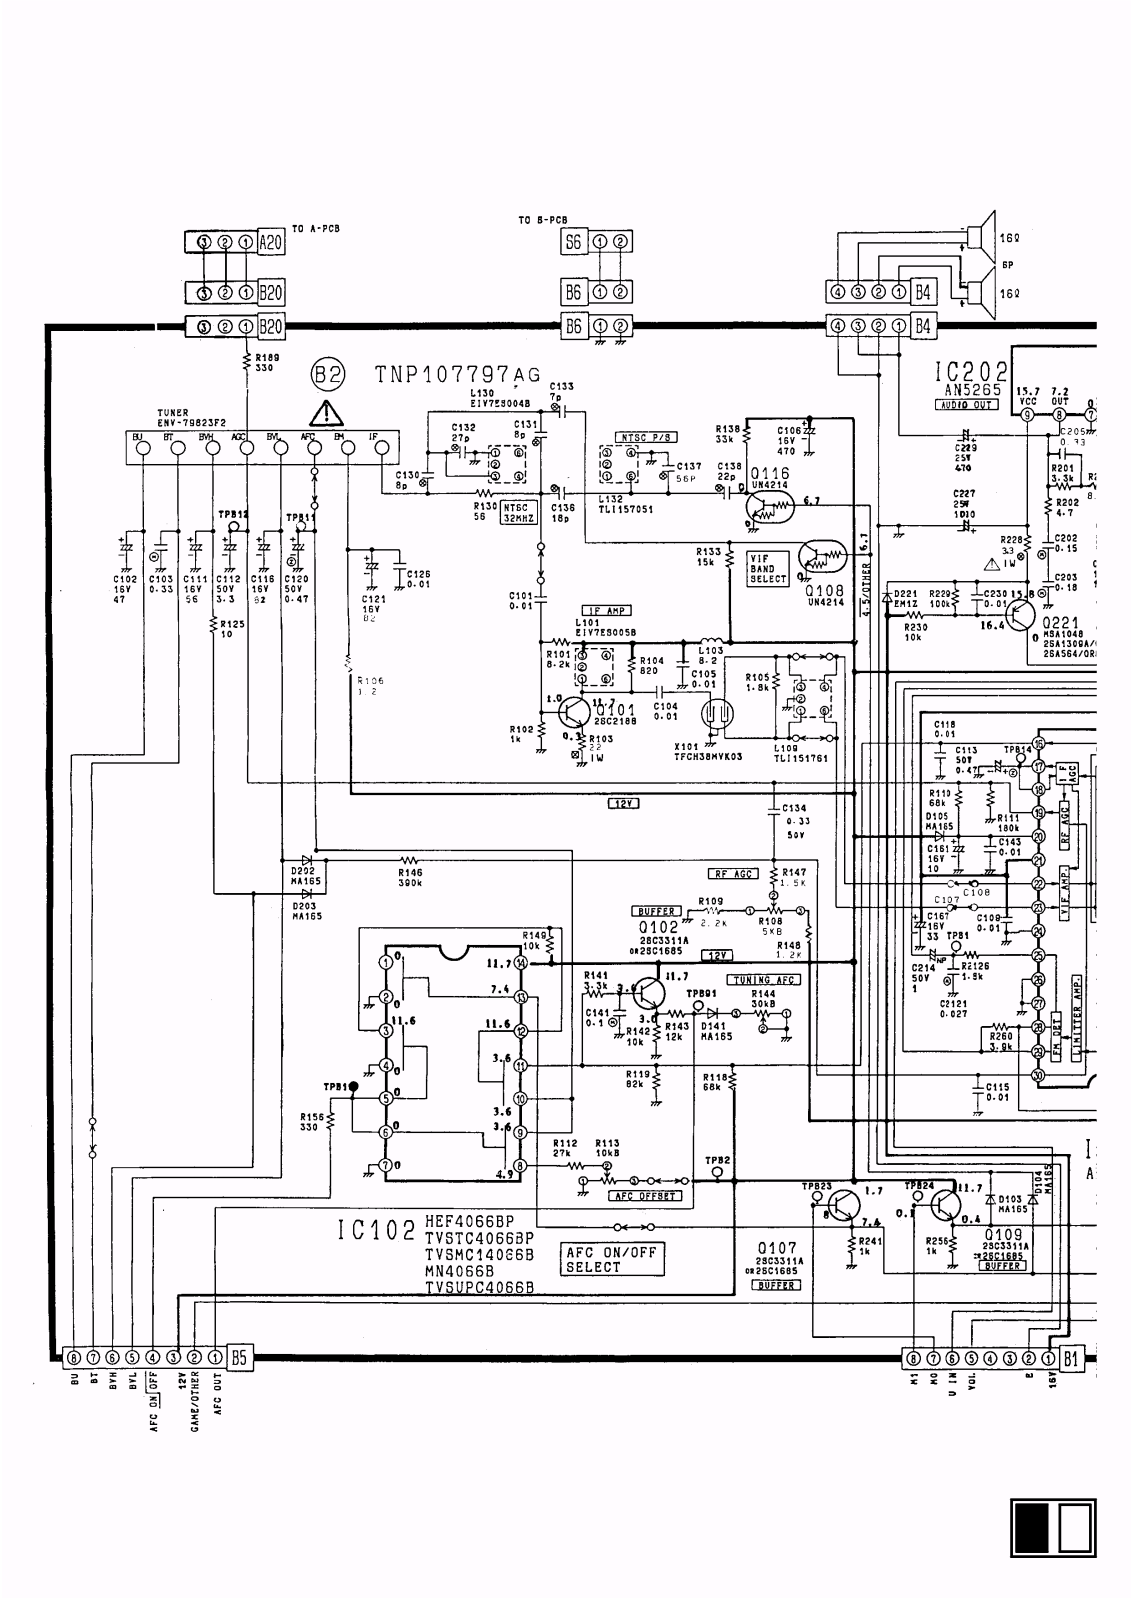 Panasonic tc 21l1r, TC 21L1T Diagram